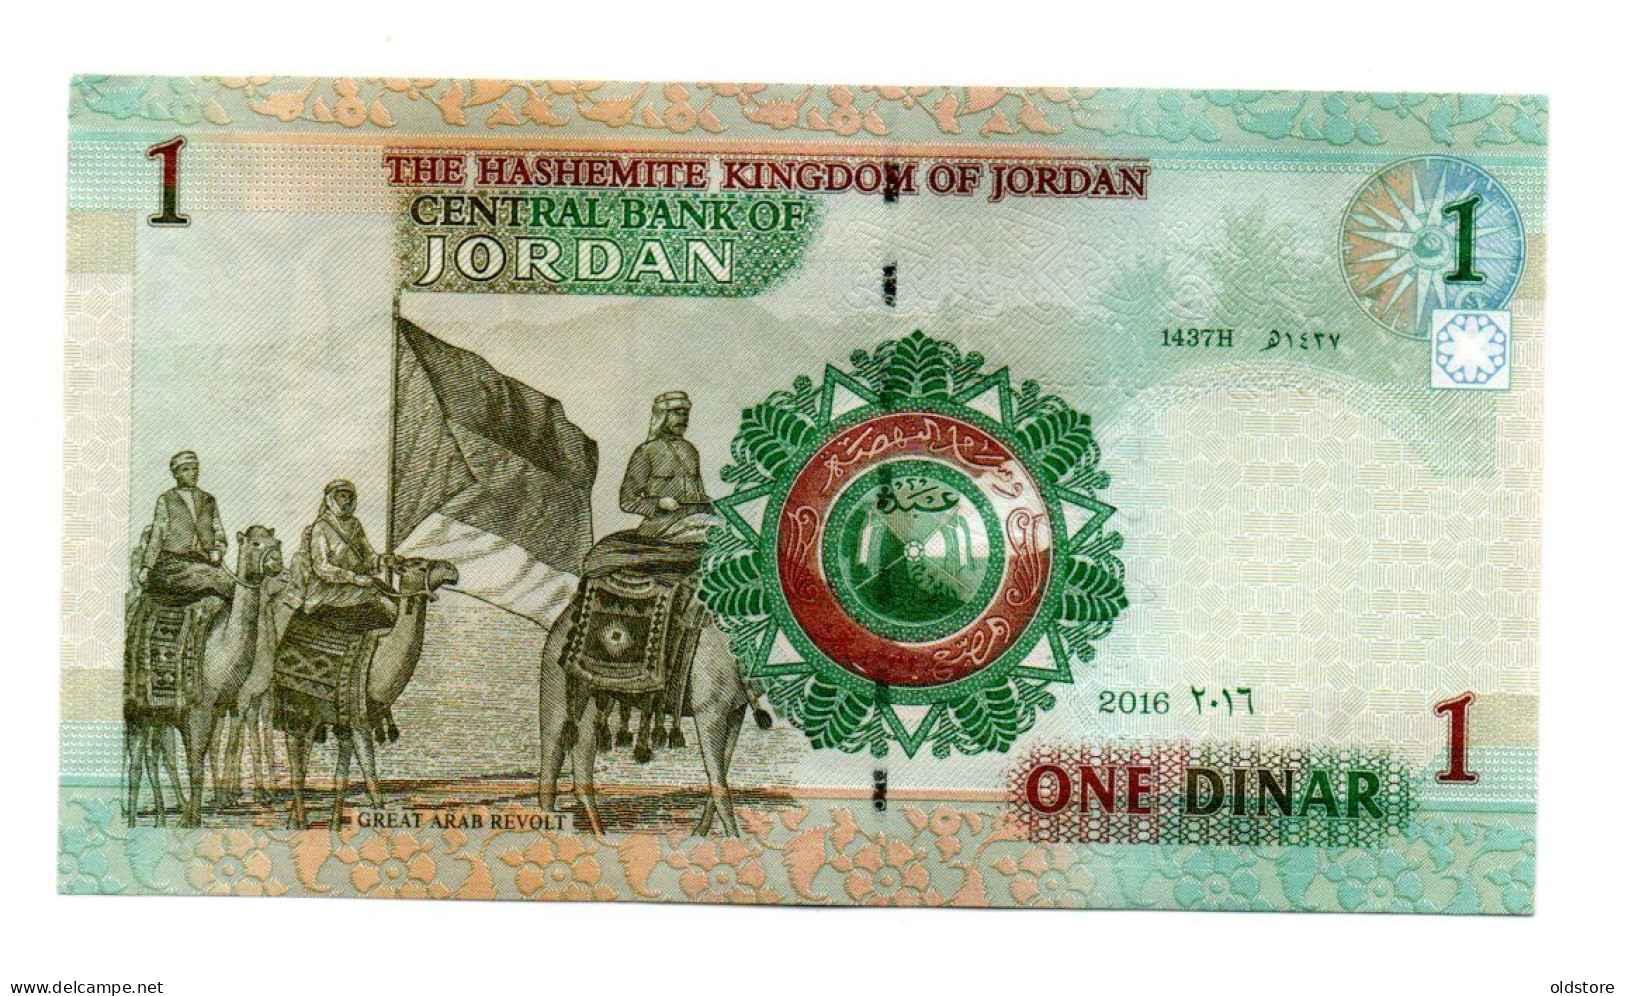 Jordan Banknotes -  10 Rupees -  2016 - Low Serial Number ( 000016 ) - UNC - Jordan